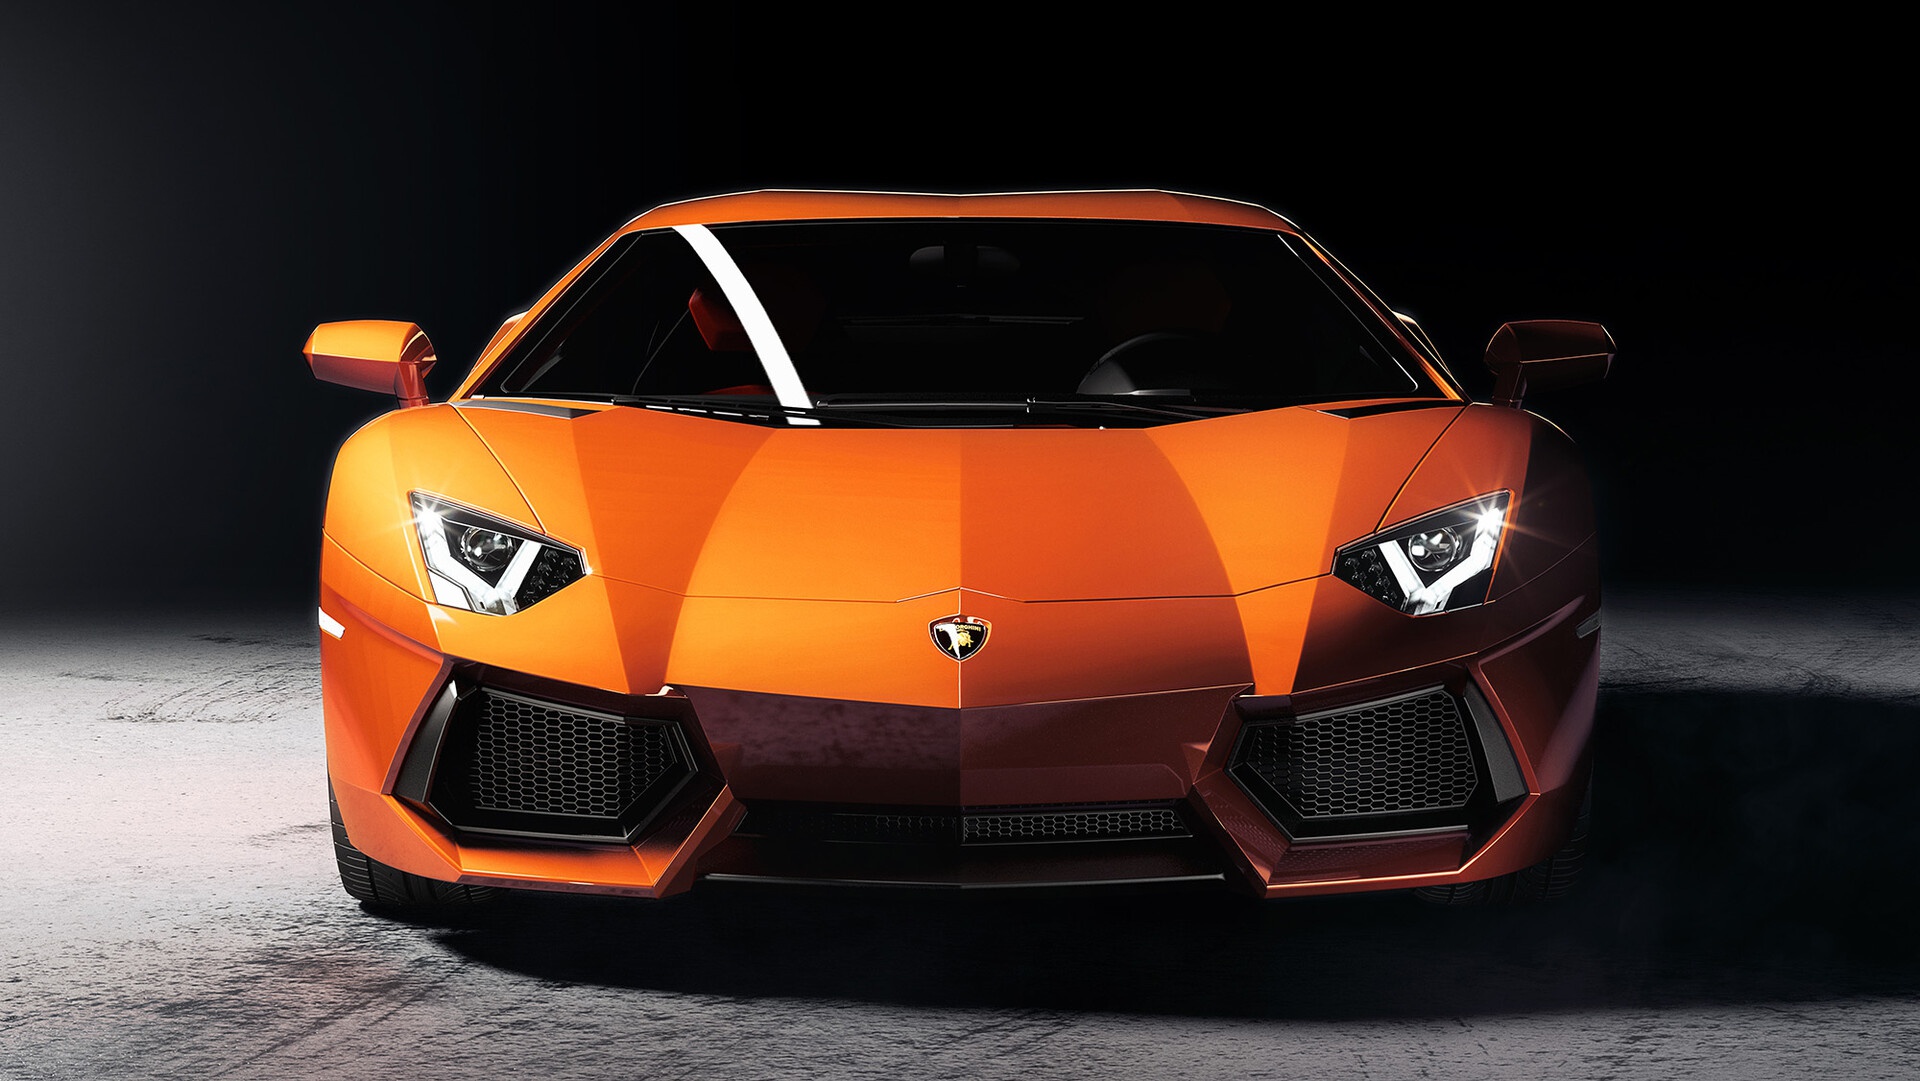 General 1920x1081 Lamborghini vehicle car orange cars LP-700 frontal view